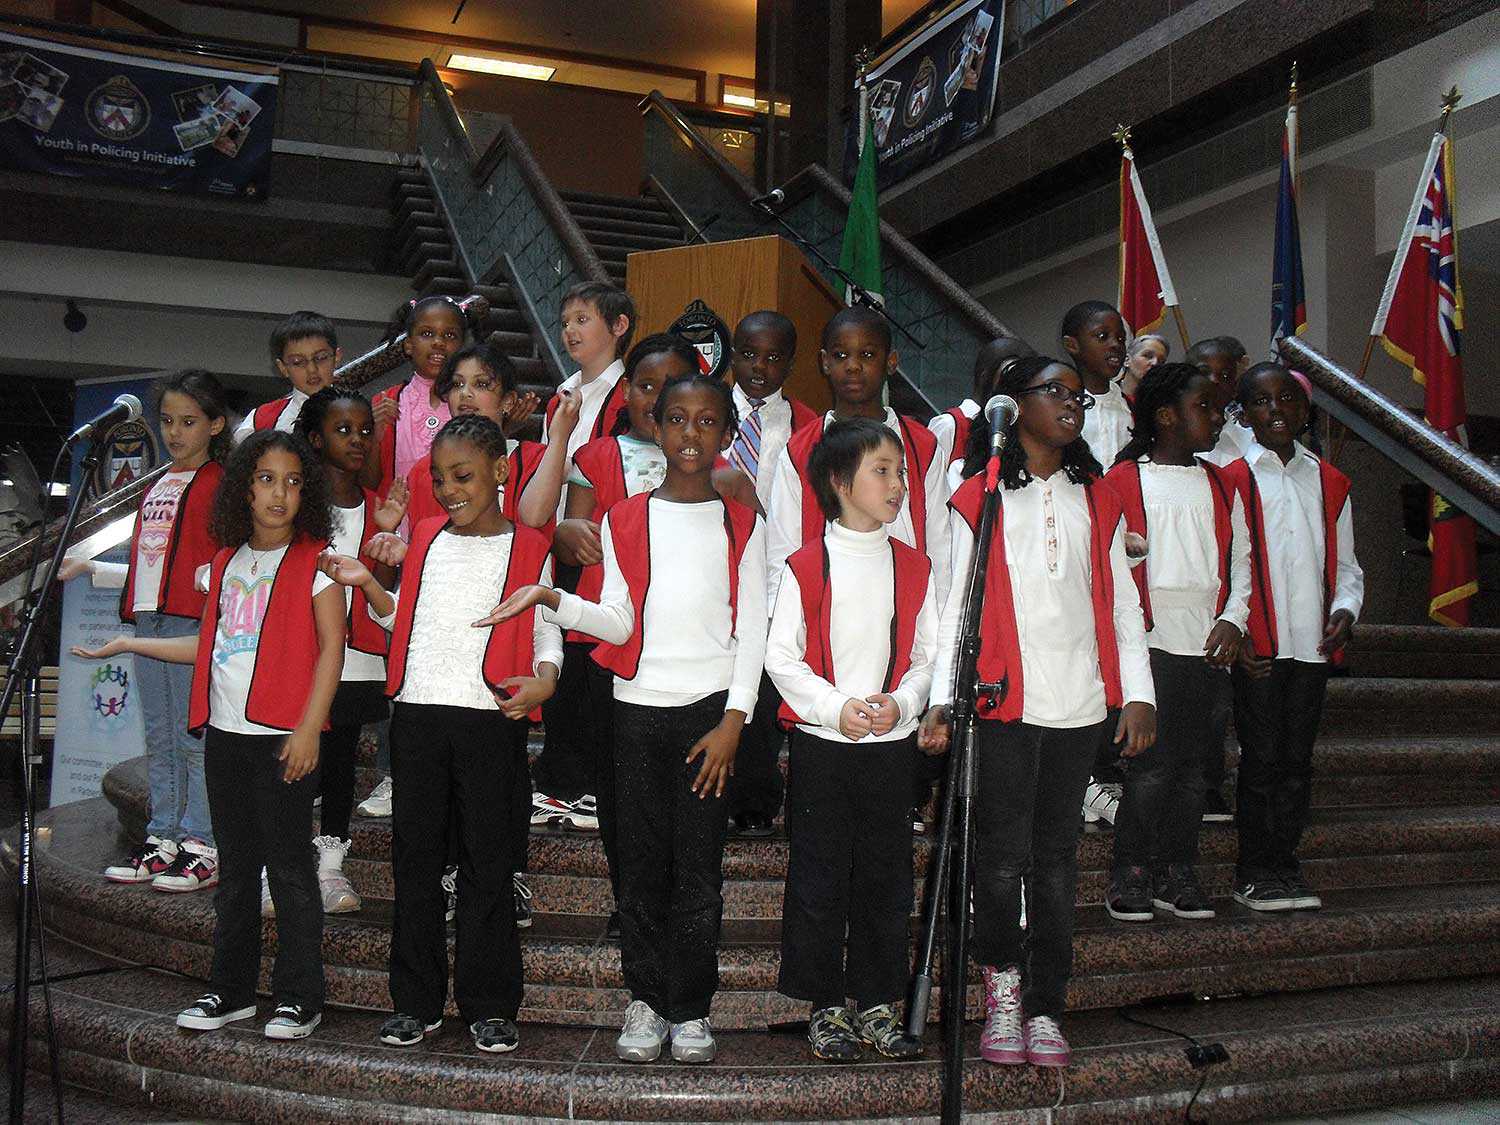 Students of Toronto’s École élémentaire catholique Saint-Jean-de-Lalande, celebrating International Francophonie Day on March 23, 2012. (Source: Journal Canora, Toronto)